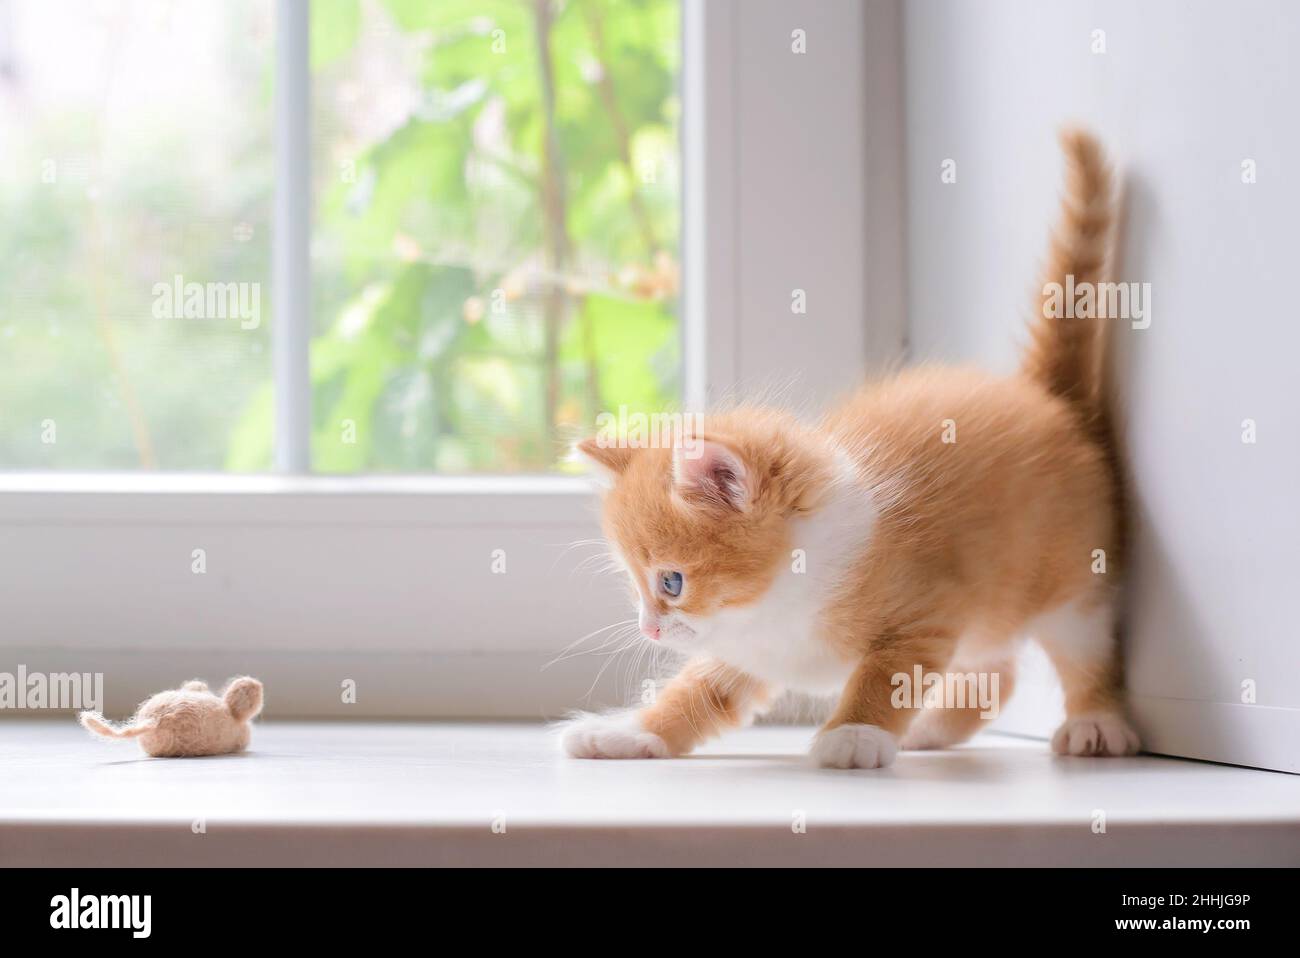 Lindo gatito rojo con un ratón de juguete Foto de stock